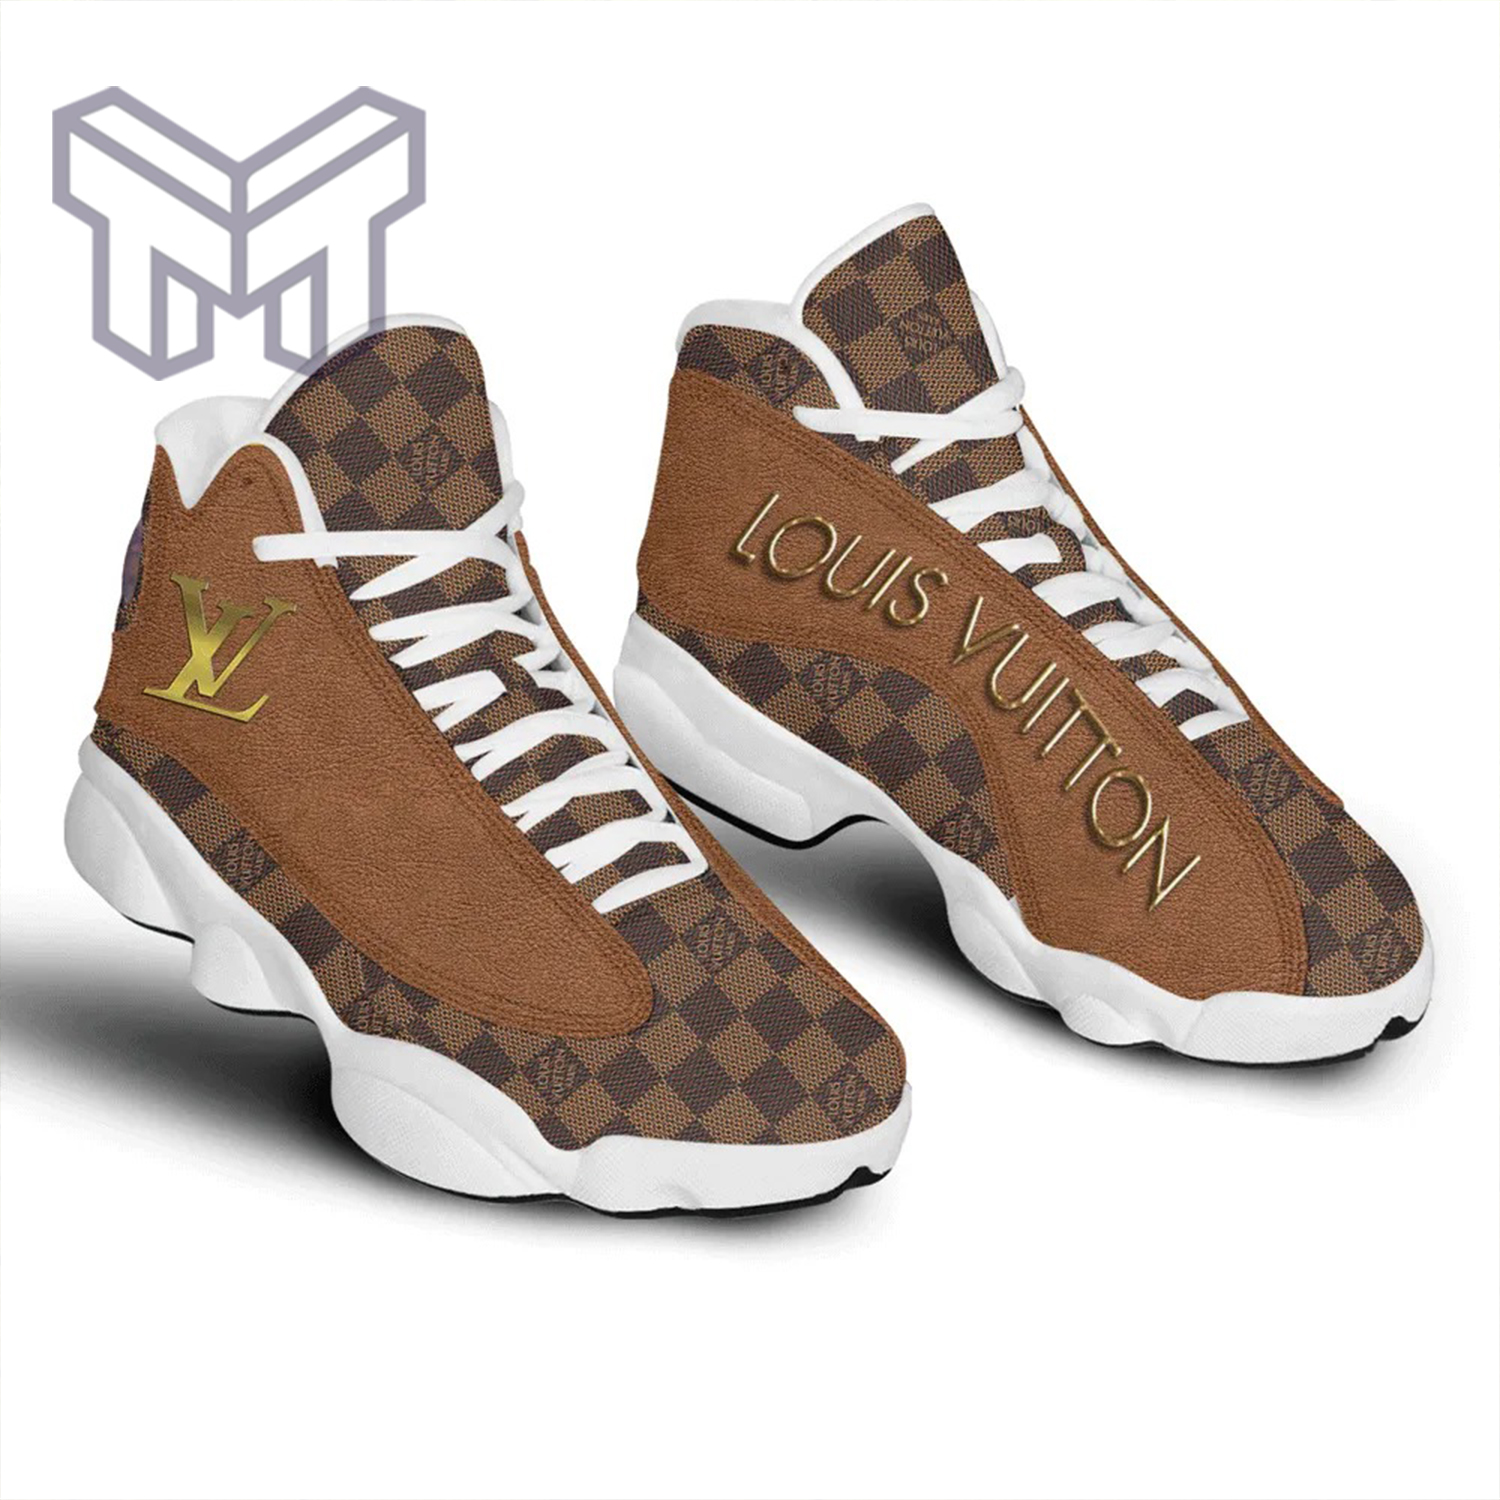 Louis vuitton luxury air jordan 13 brown sneaker